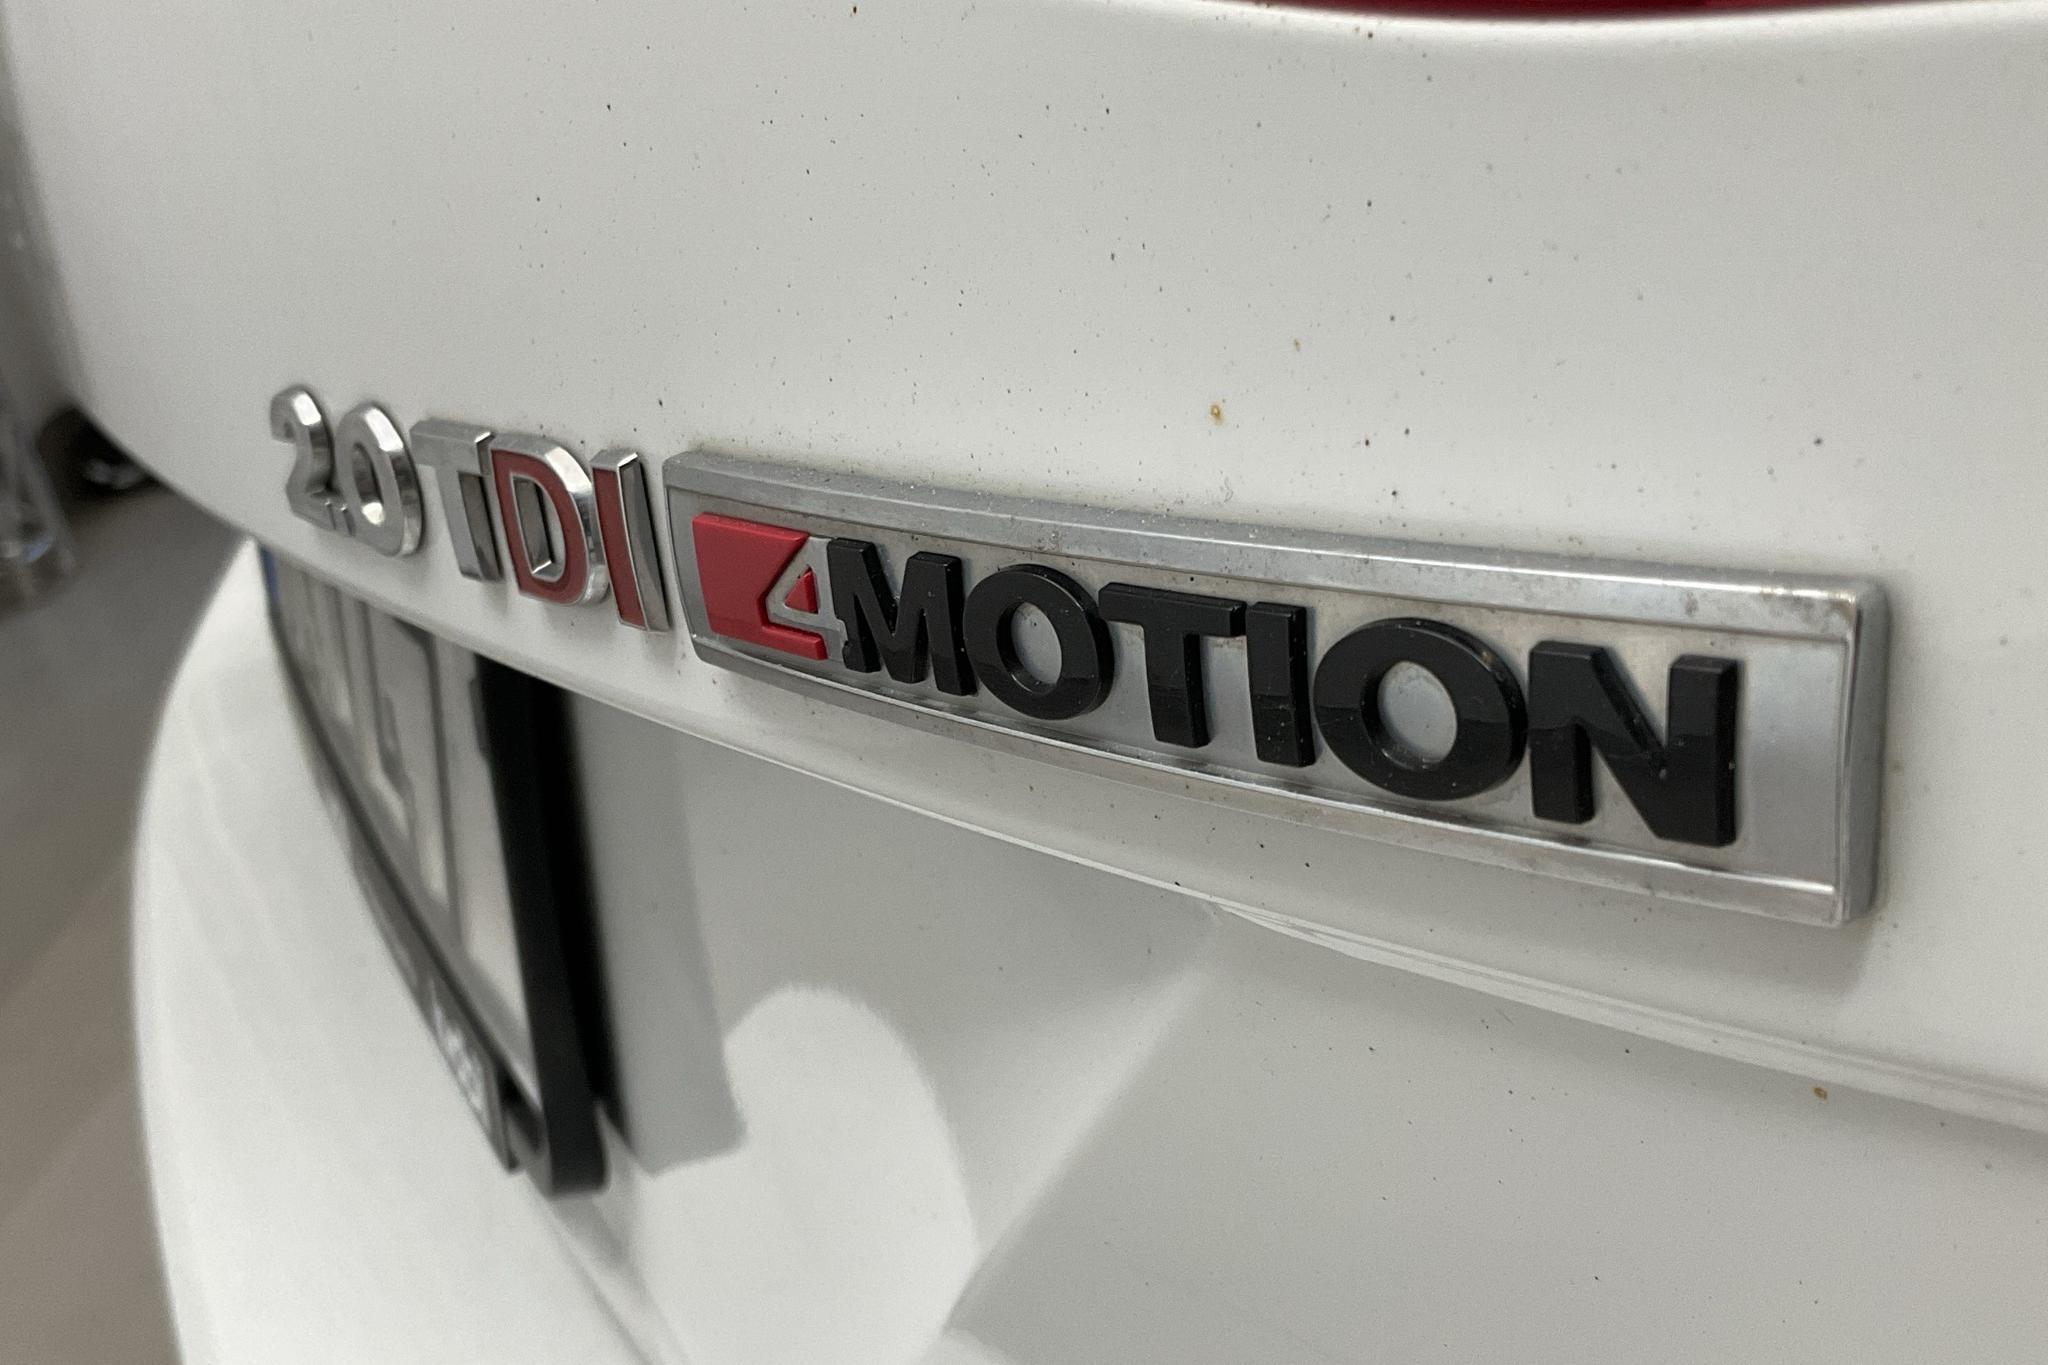 VW Passat 2.0 TDI Sportscombi 4MOTION (190hk) - 20 016 mil - Automat - vit - 2018